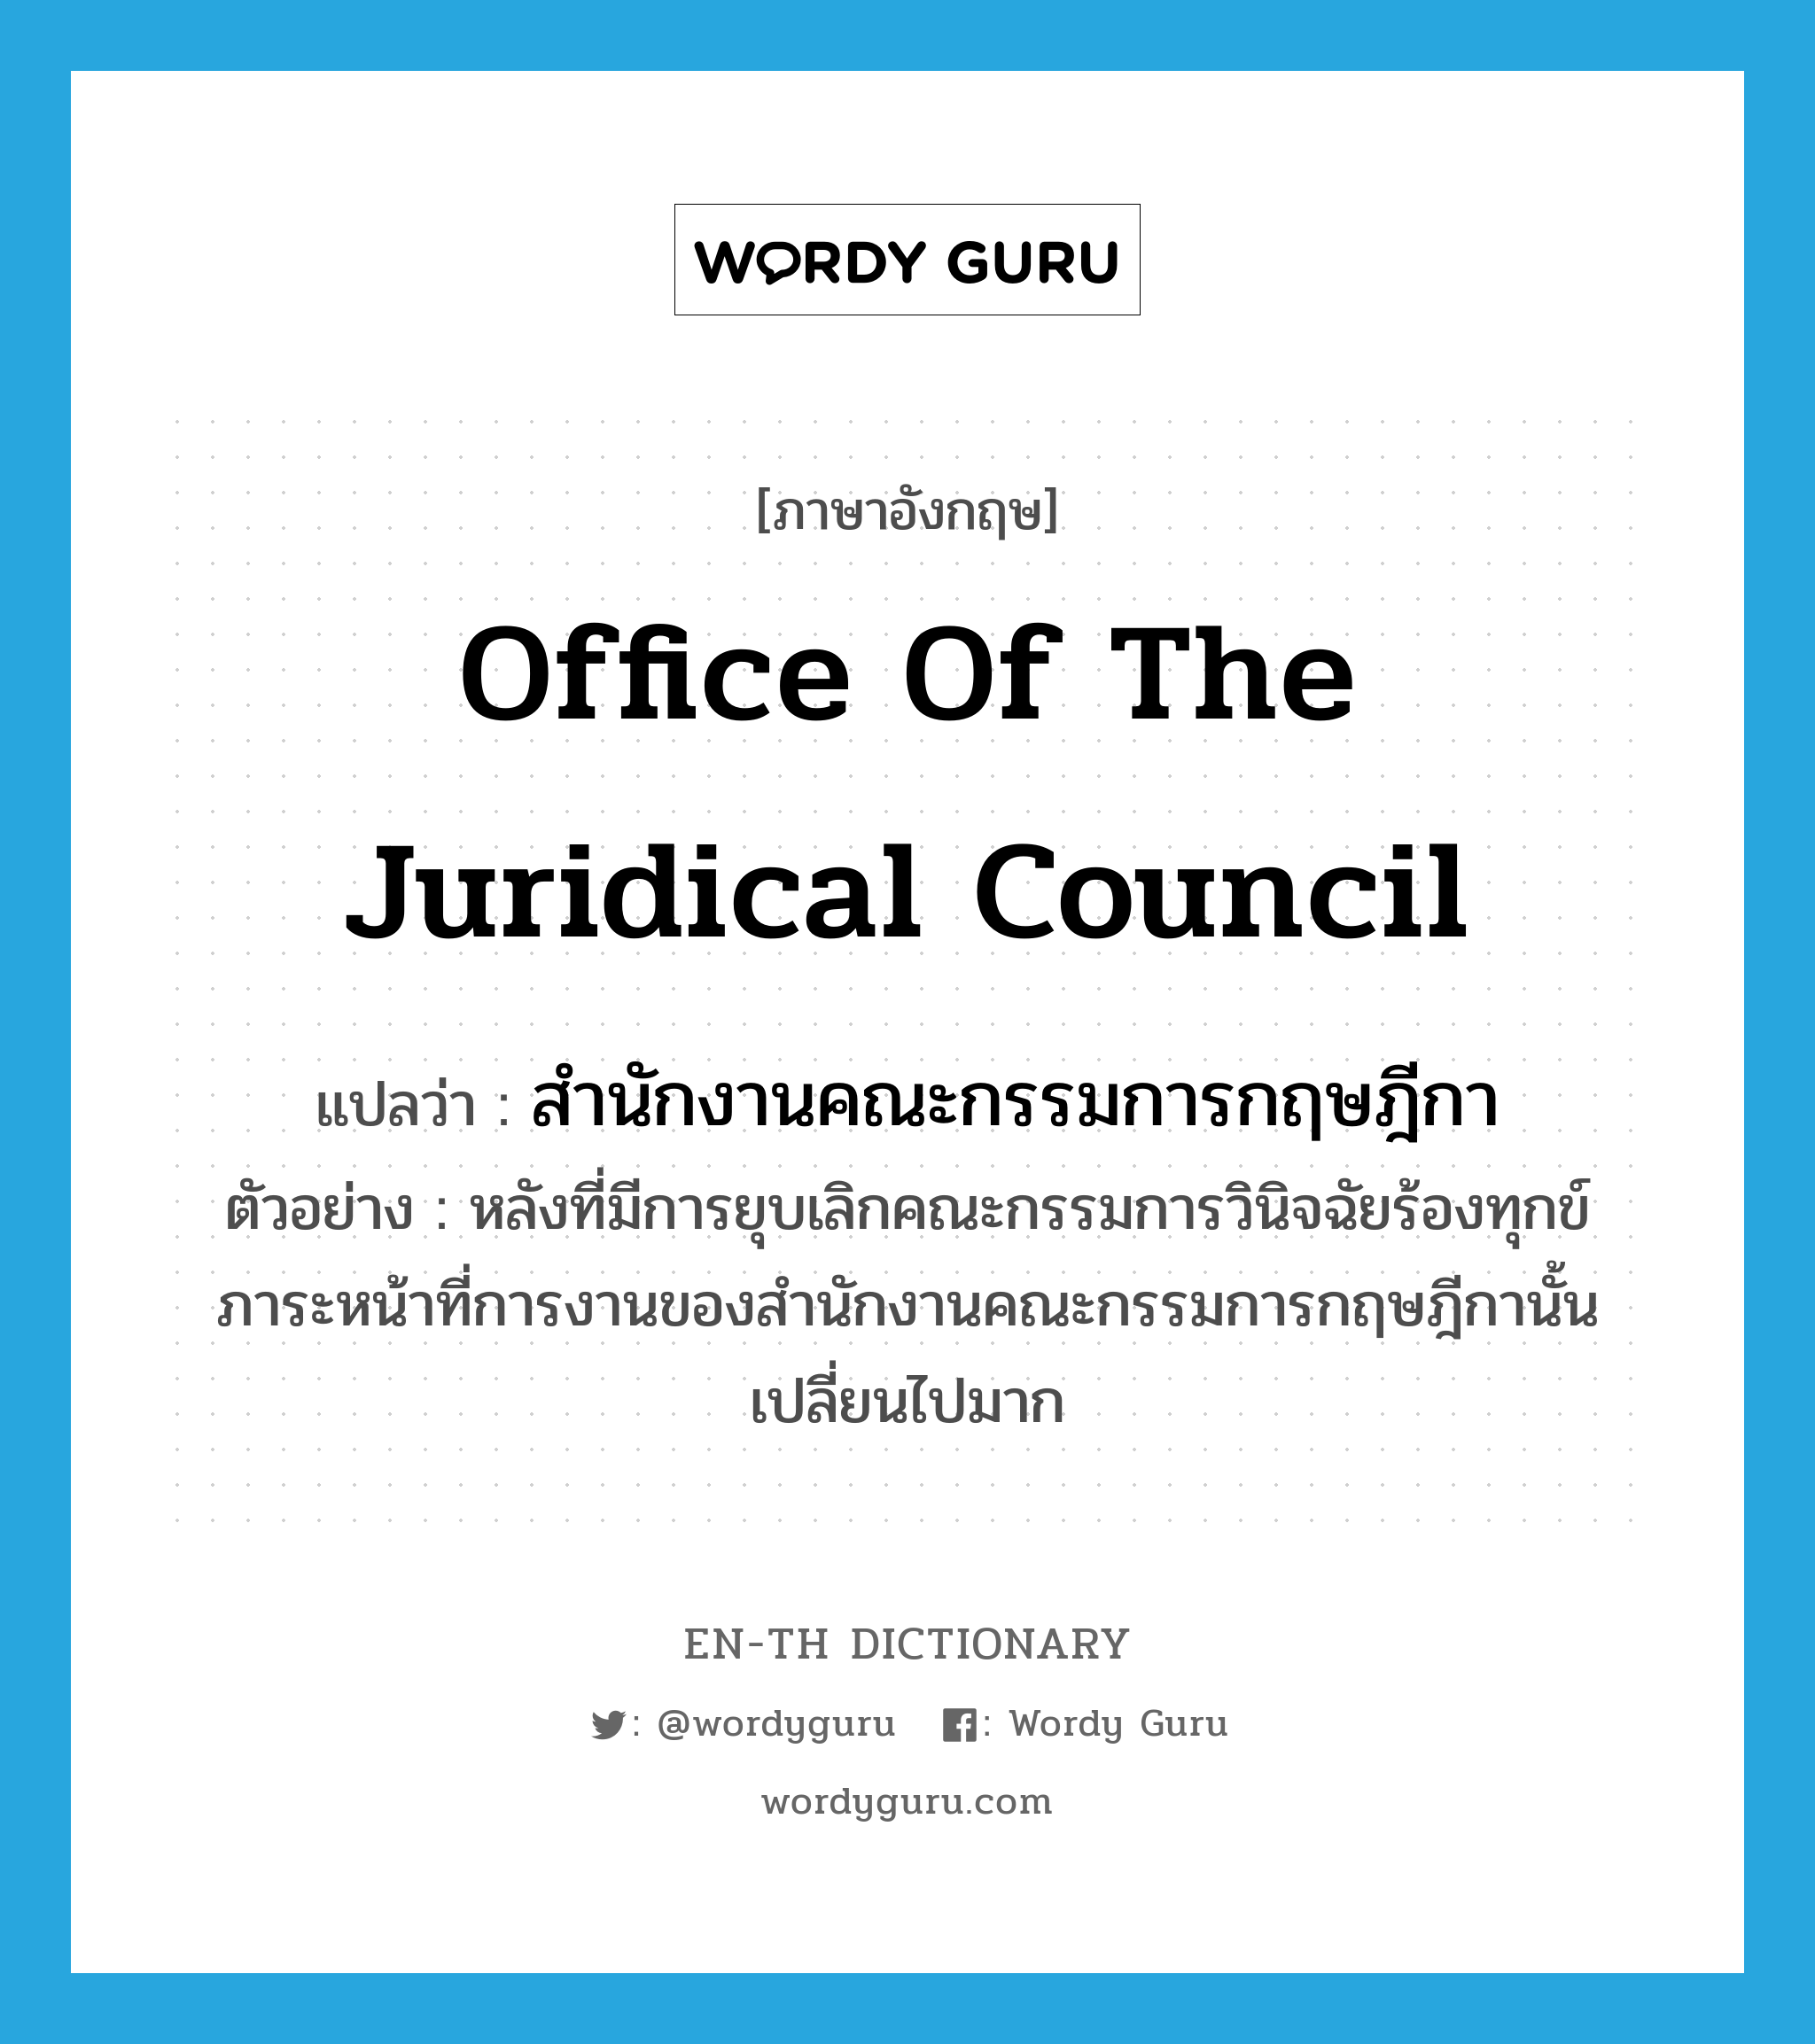 สำนักงานคณะกรรมการกฤษฎีกา ภาษาอังกฤษ?, คำศัพท์ภาษาอังกฤษ สำนักงานคณะกรรมการกฤษฎีกา แปลว่า Office of the Juridical Council ประเภท N ตัวอย่าง หลังที่มีการยุบเลิกคณะกรรมการวินิจฉัยร้องทุกข์ ภาระหน้าที่การงานของสำนักงานคณะกรรมการกฤษฎีกานั้นเปลี่ยนไปมาก หมวด N